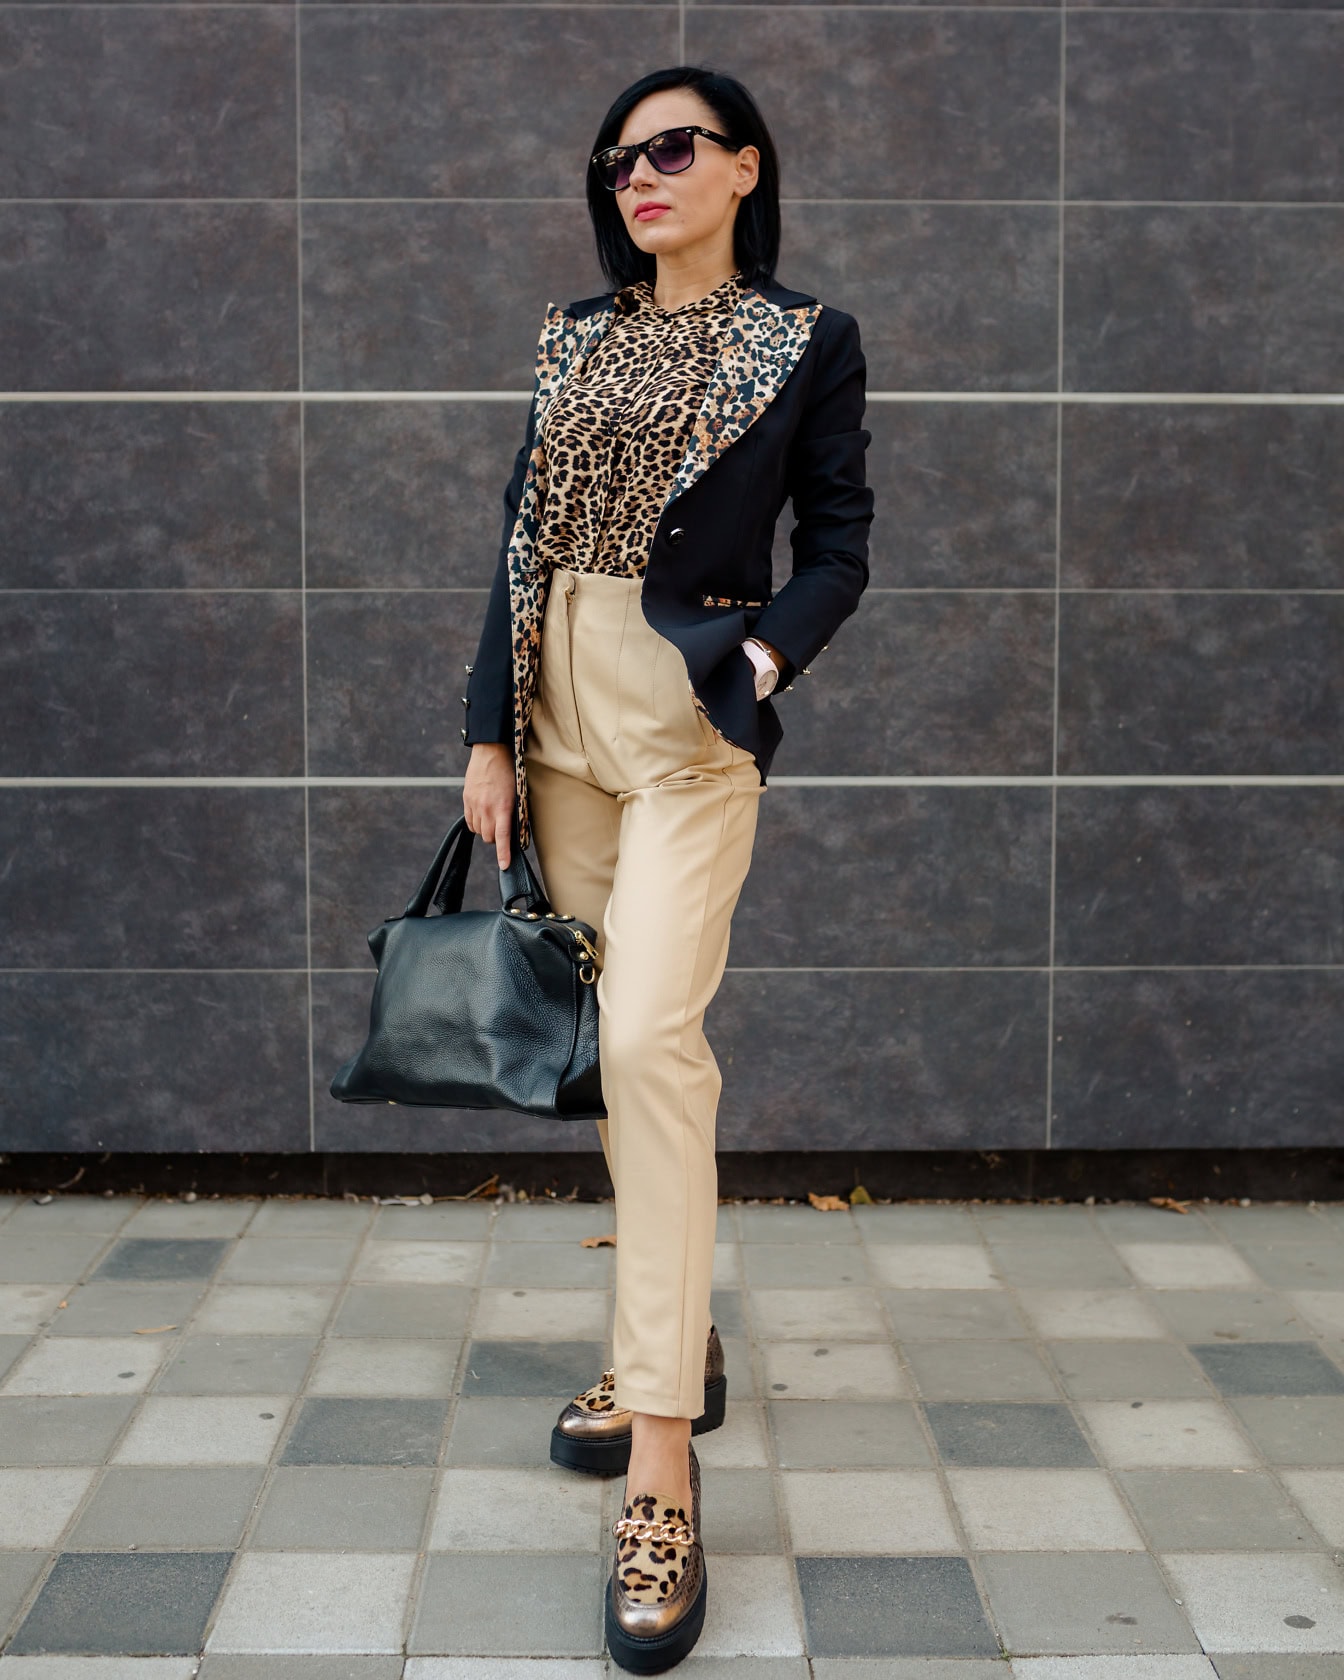 Donna d’affari fiduciosa in posa con una camicia e un cappotto con stampa leopardata e pantaloni giallastri mentre tiene in mano una borsa in pelle nera